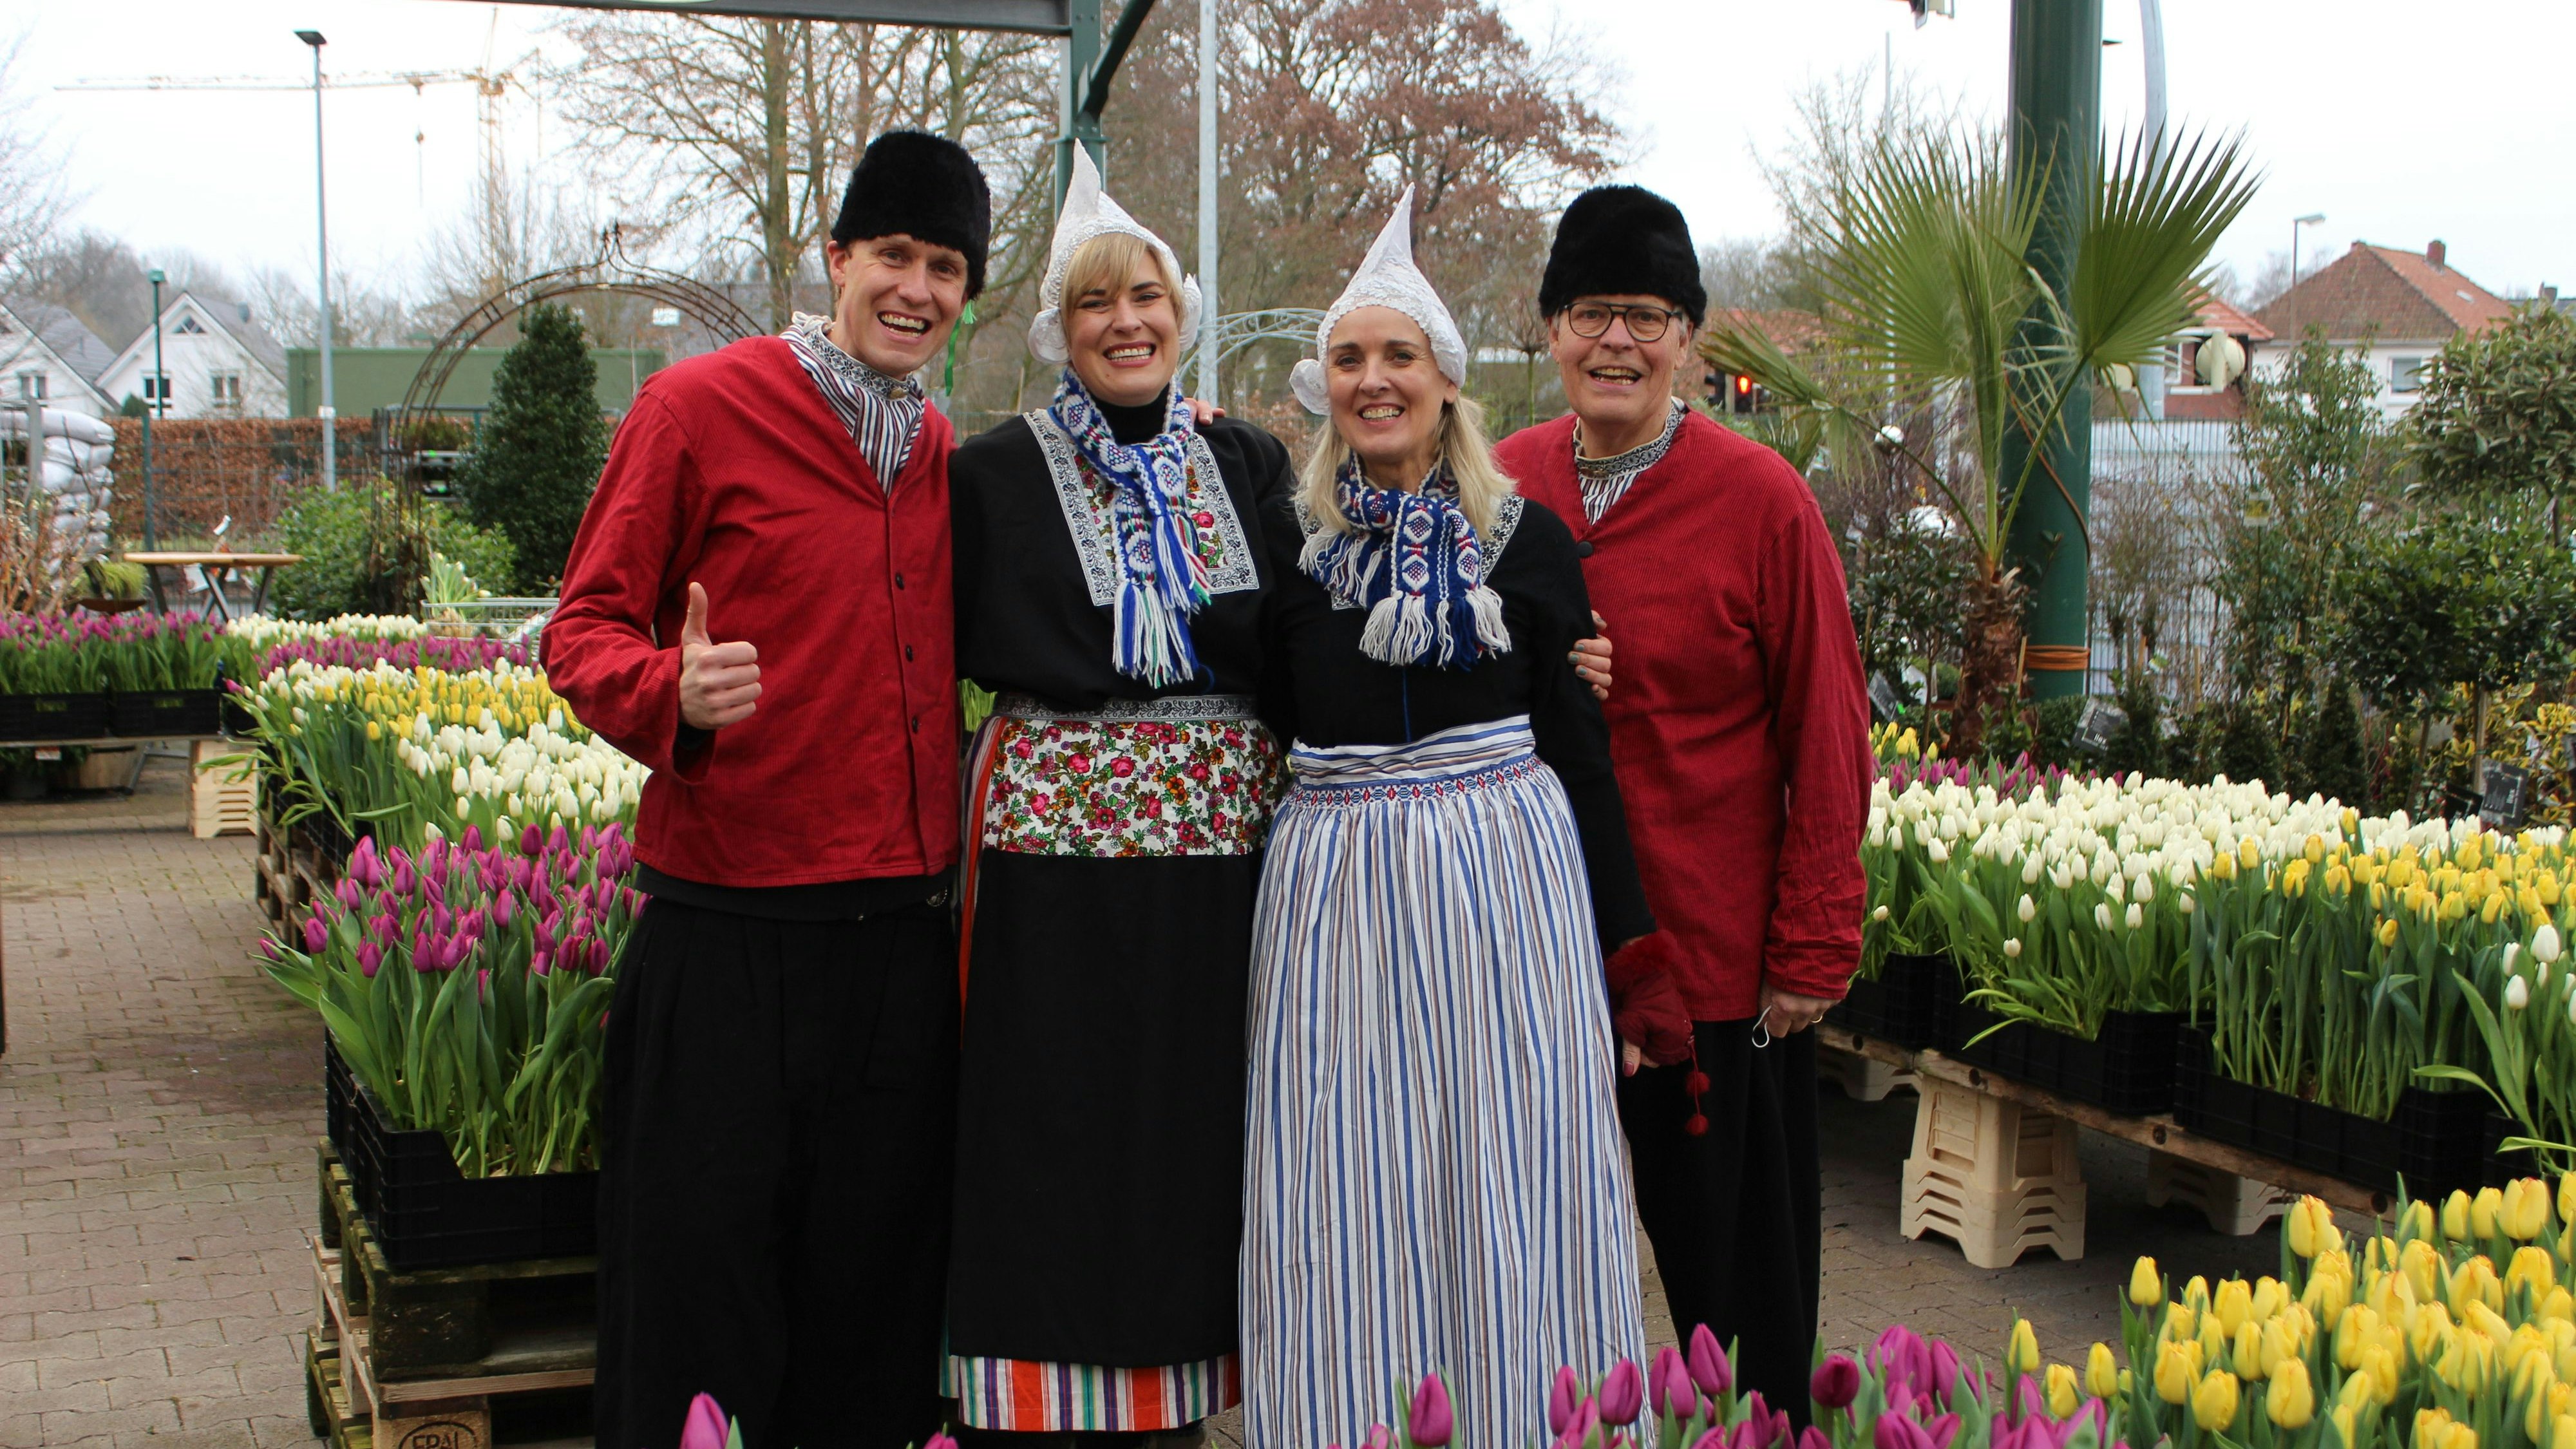 Rick, Marion, Els und&nbsp;Jan Schouten (von links) inmitten der Tulpen für den zweiten "Tulpenplukdag" aus Holland. Foto: Heinzel